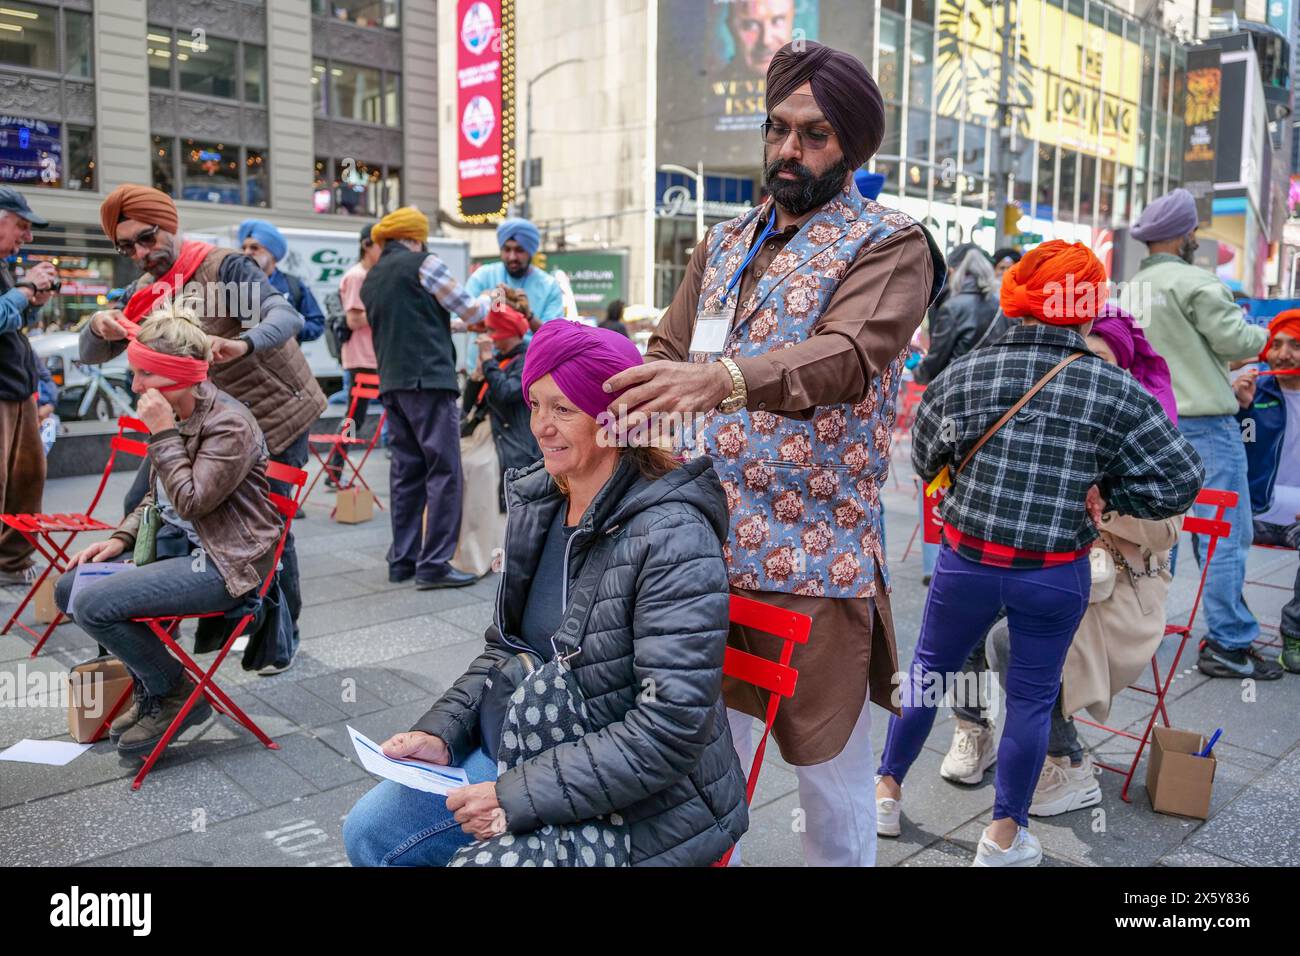 New York, New York, Stati Uniti. 11 maggio 2024. Il giorno dei turbani a Times Square ha fatto conoscere agli americani e ai visitatori i turbani sikh e i suoi valori nella fede sikh, oltre a correggere i malintesi sui turbani attraverso la condivisione dei valori dell'amore, della fede, dell'uguaglianza e della giustizia sociale. Mentre legano i turbani ai visitatori, imparano a conoscere la cultura e il patrimonio Sikh. L'evento ha caratterizzato un palco sonoro che offre anche musica e spettacoli. Crediti: ZUMA Press, Inc./Alamy Live News Foto Stock